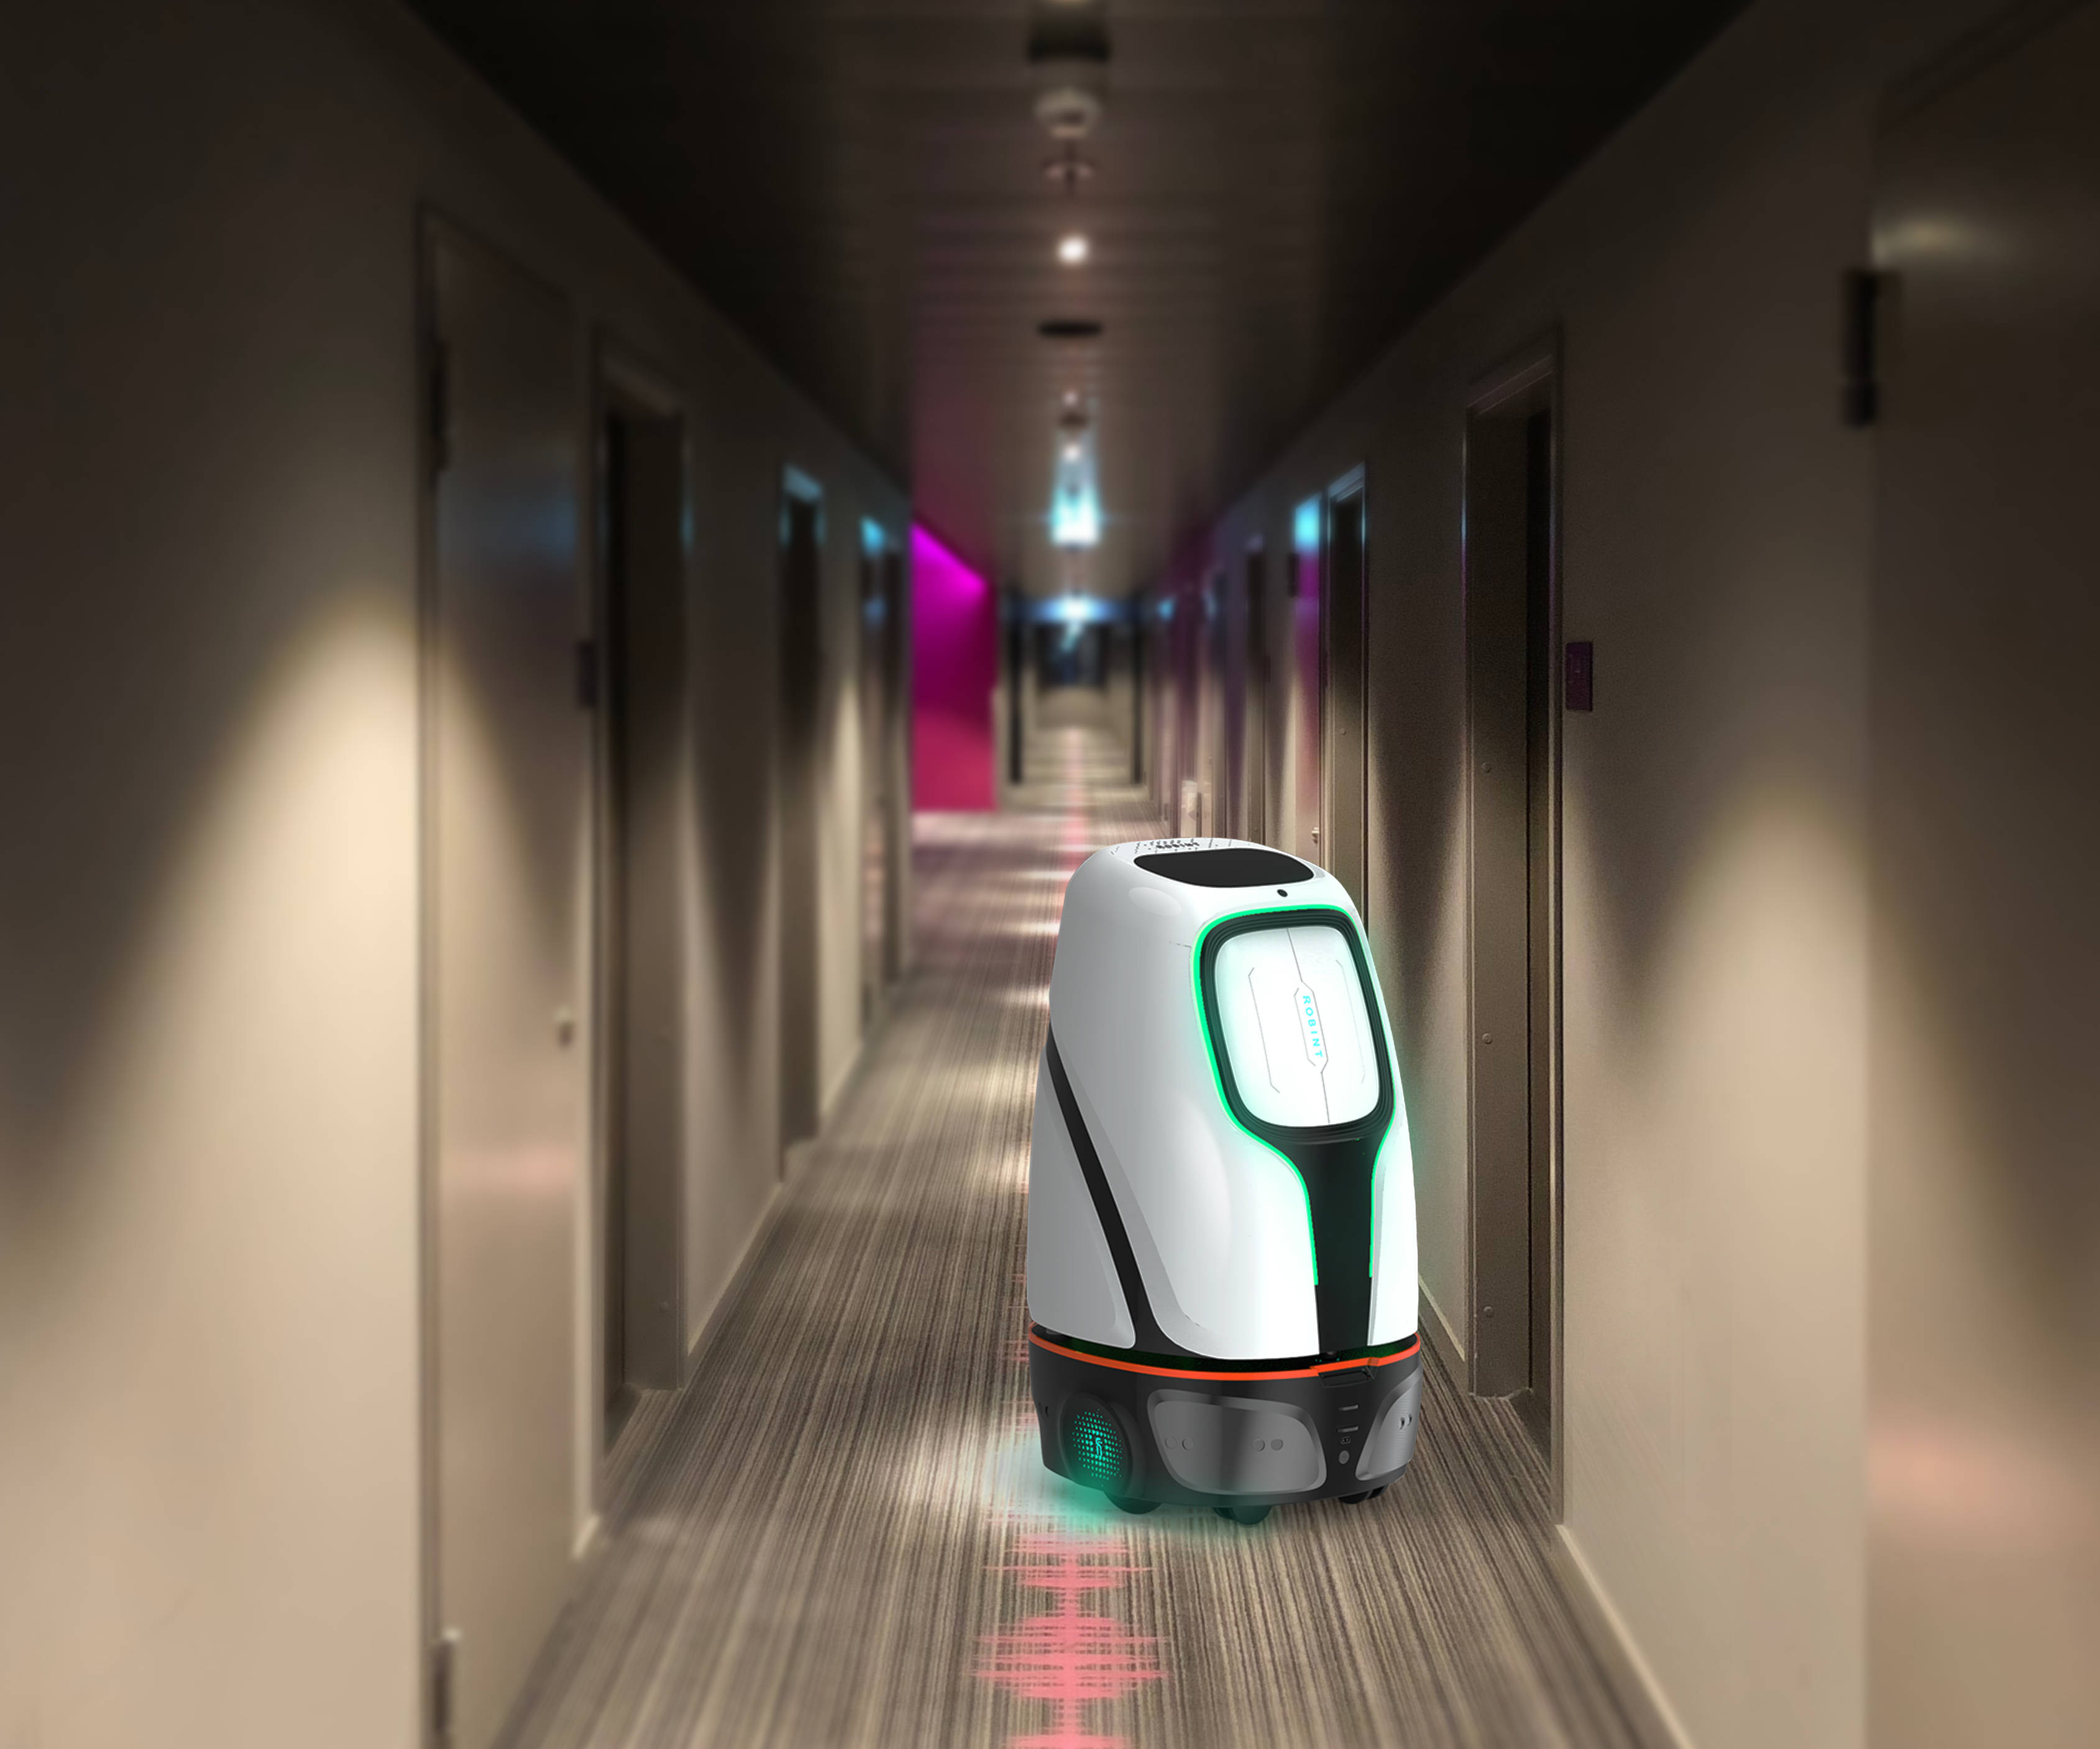 战疫中,酒店机器人能为您做什么?